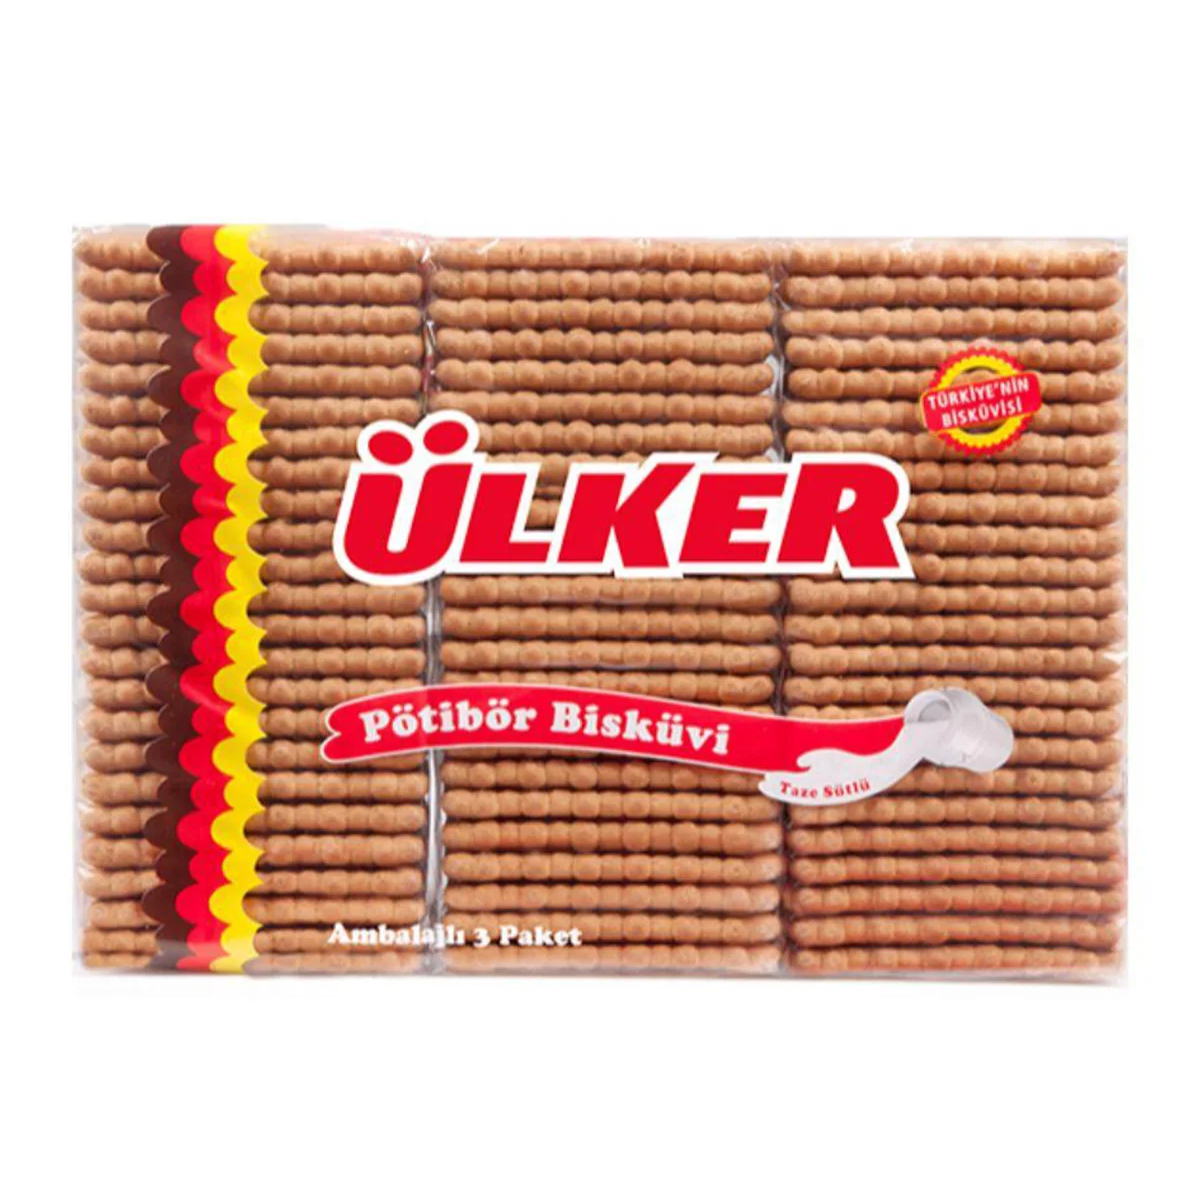 Печенье Ulker Petit Beurre, 450 г